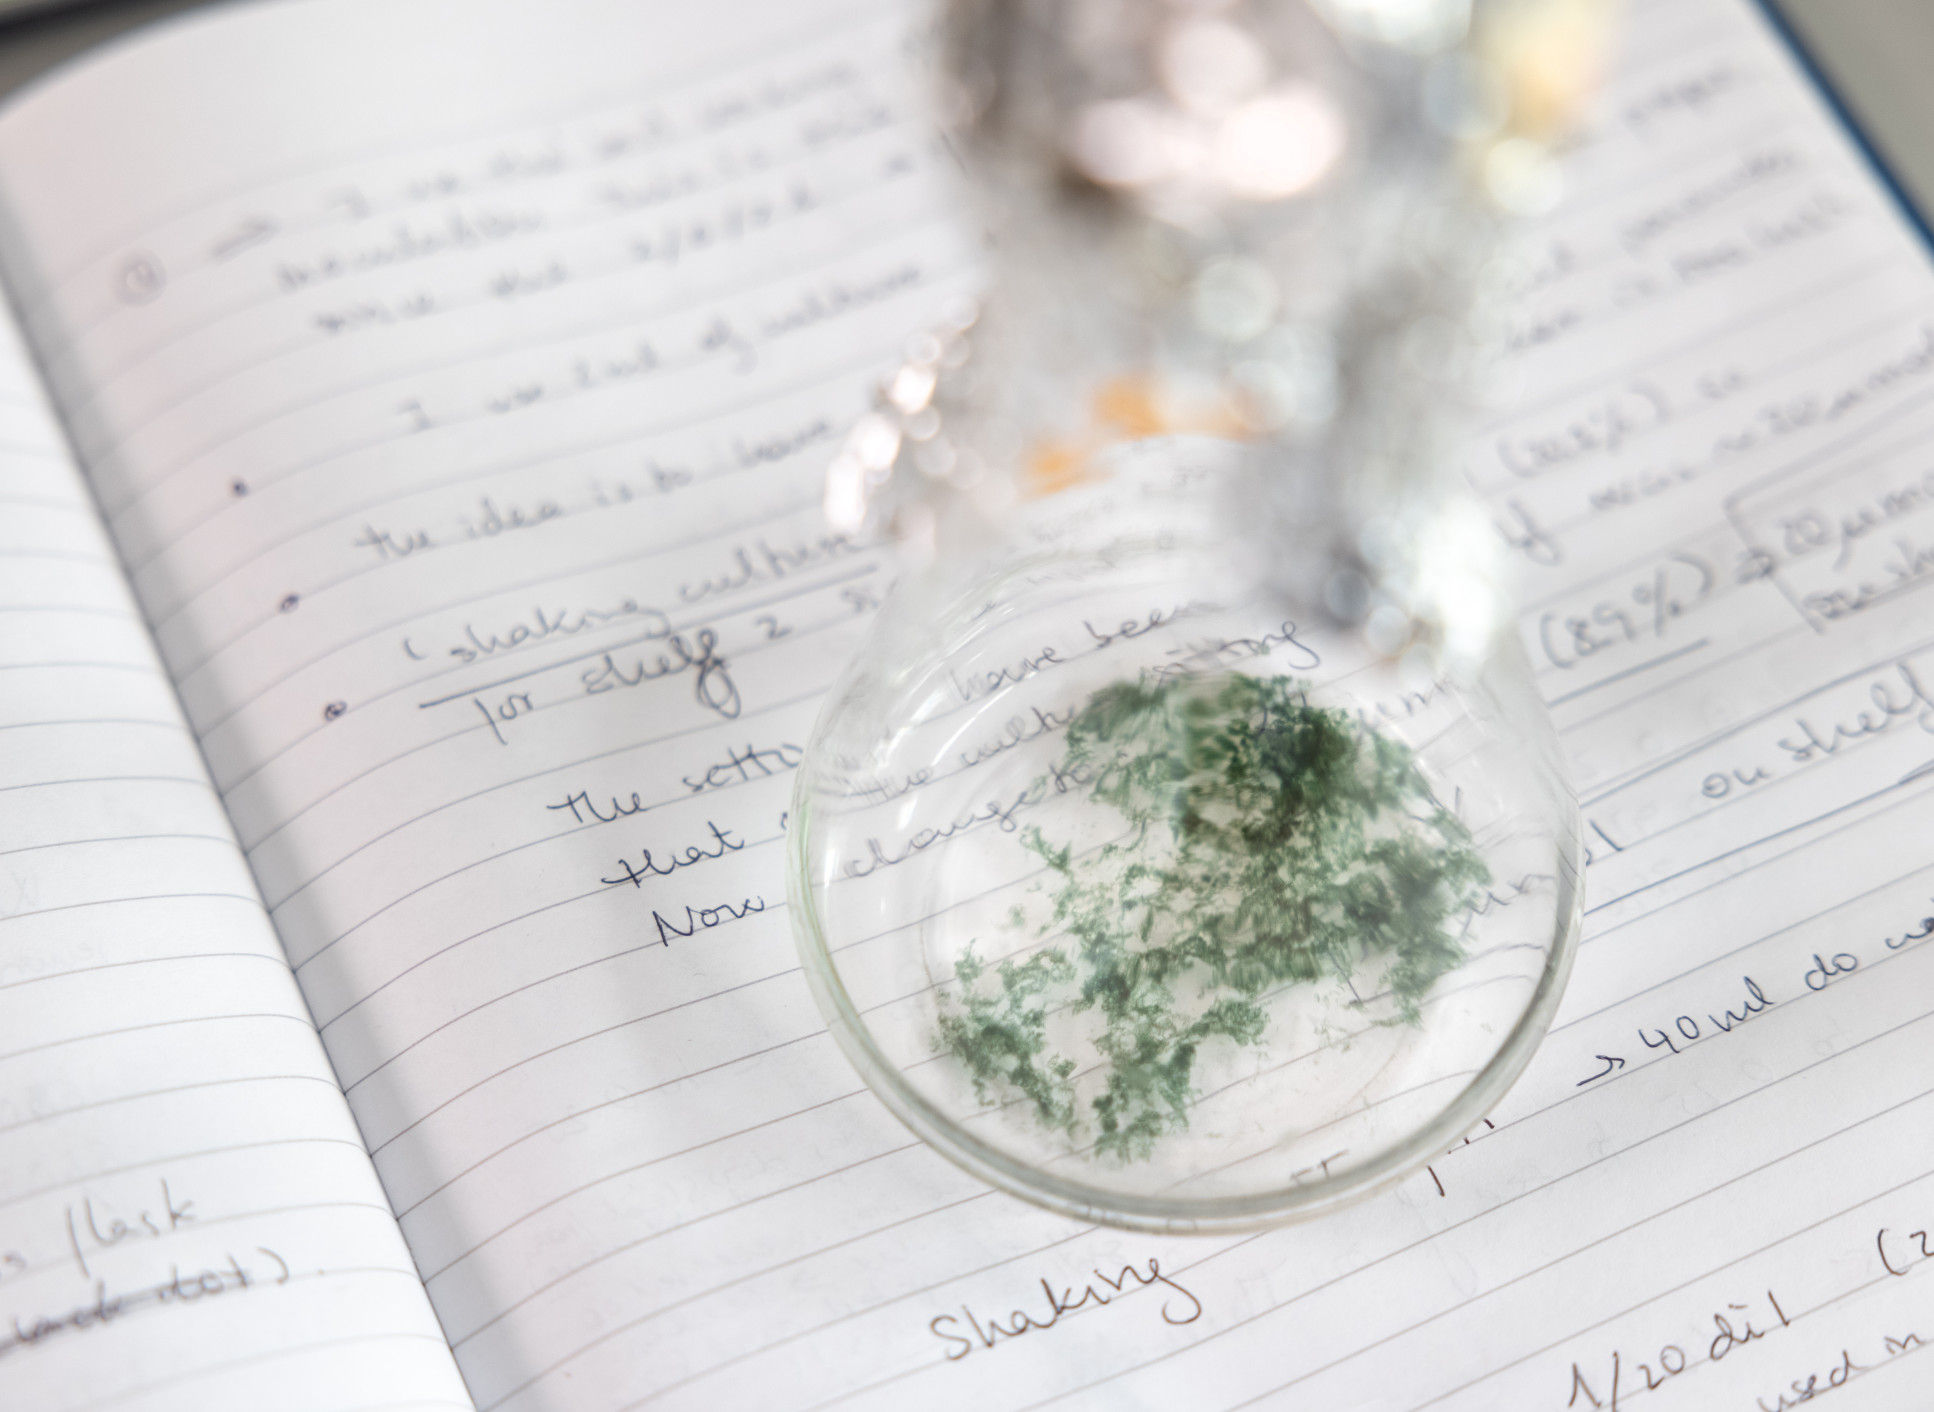 Green material in a beaker